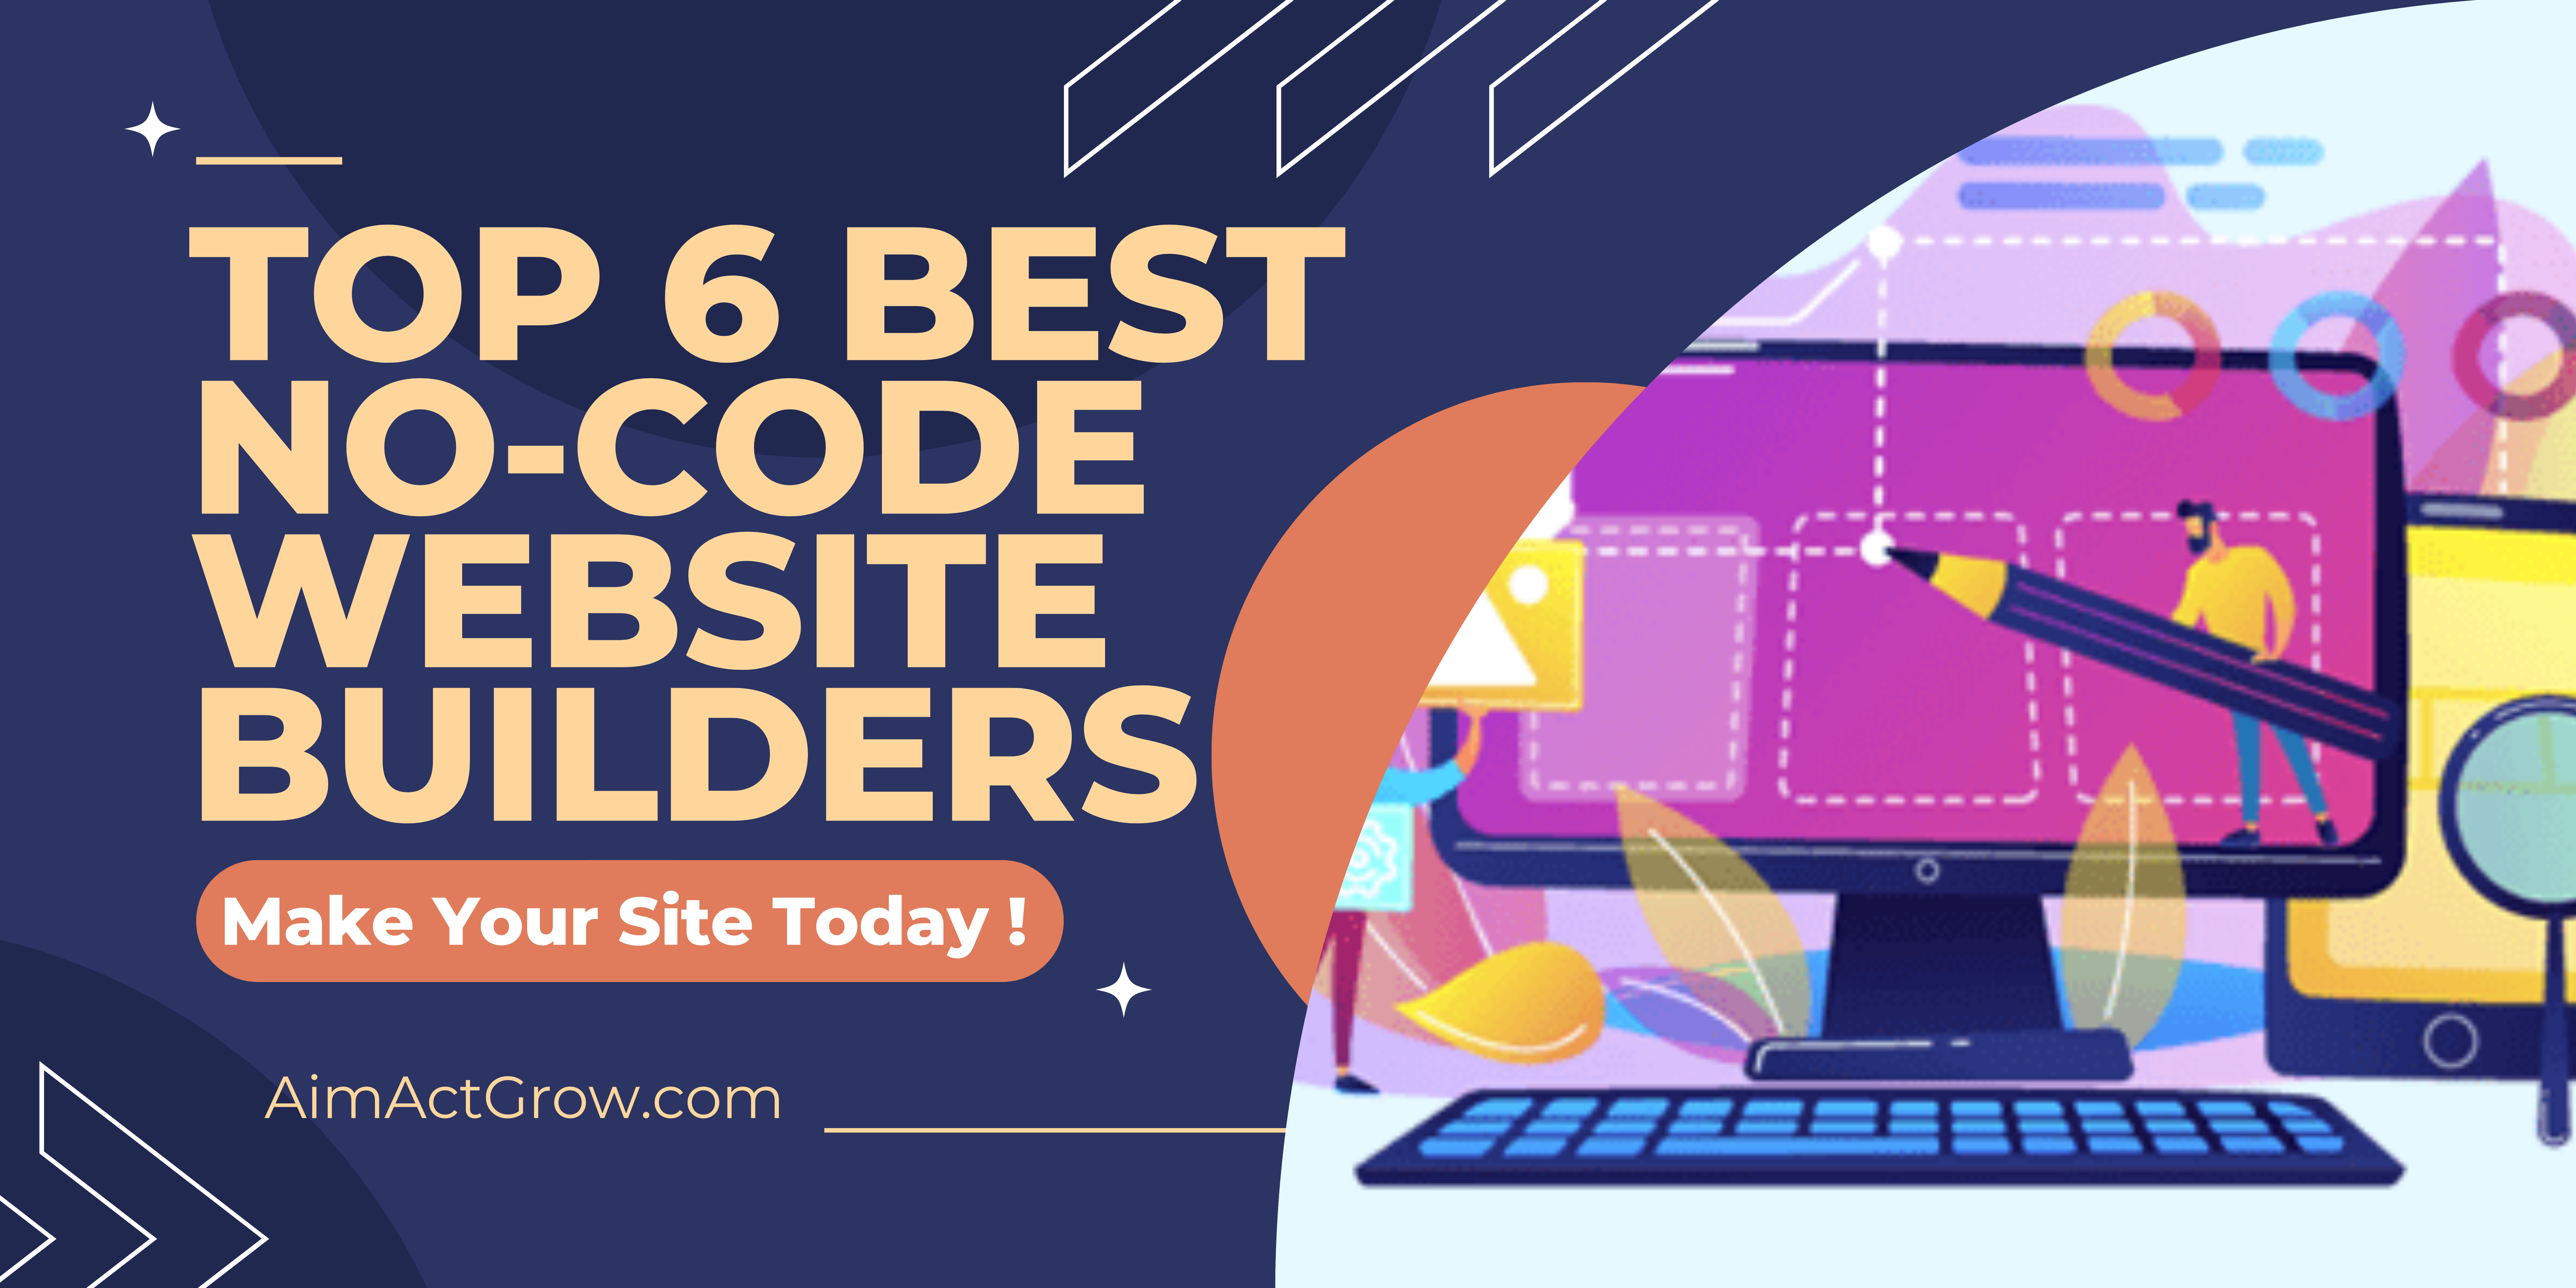 The Best No-Code Website Builder